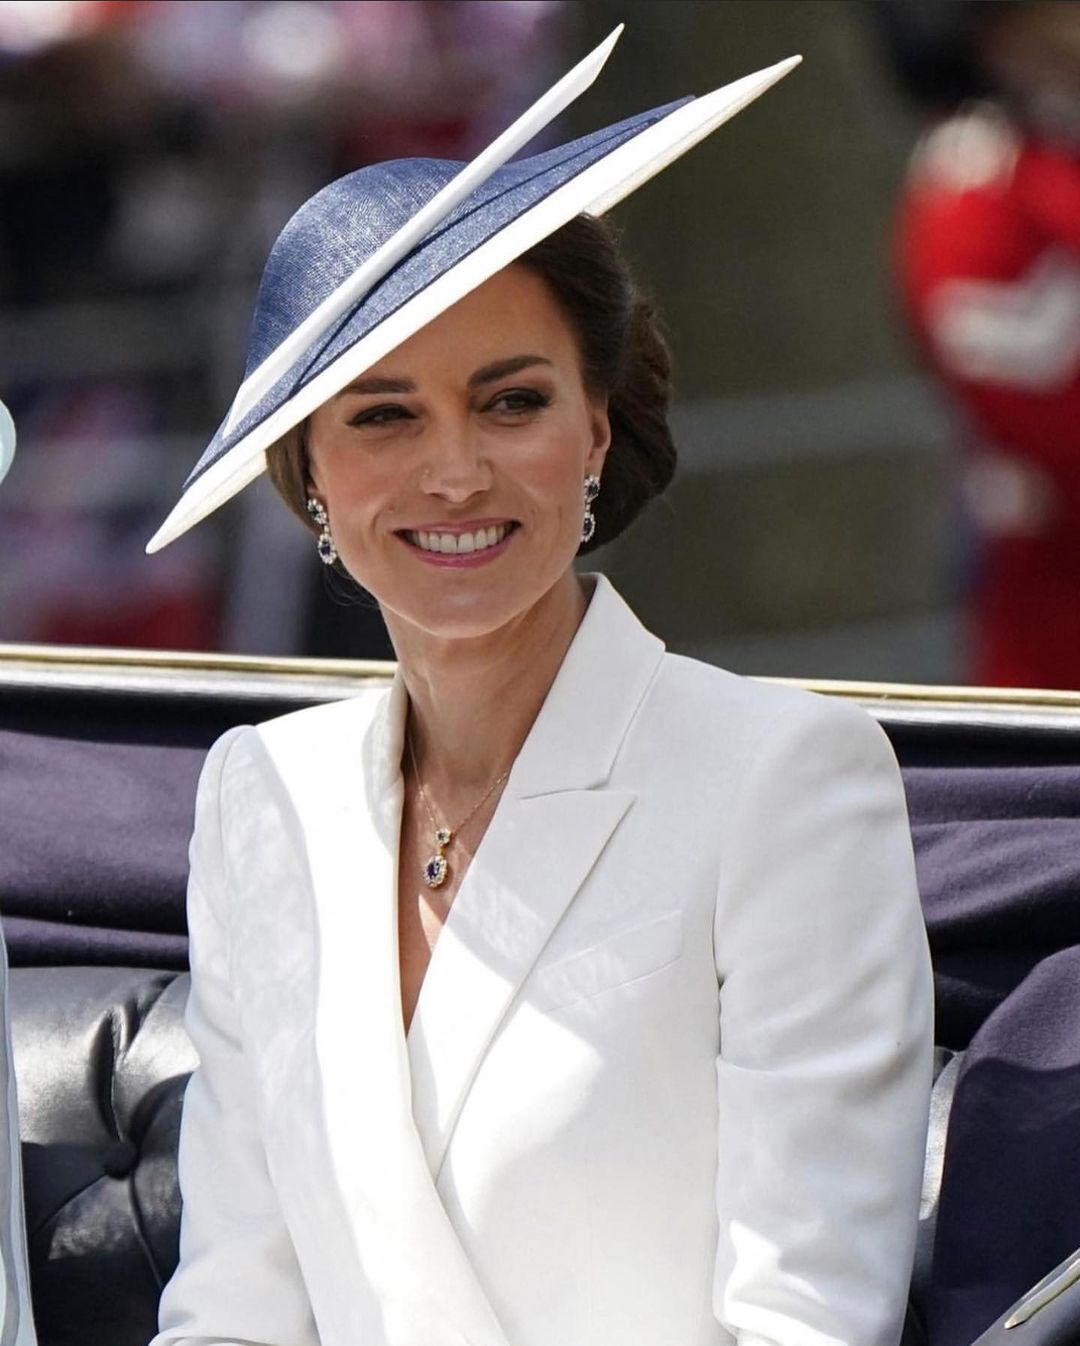 Sob rumores de piora na saúde, Rei Charles III concede novo título a Kate Middleton